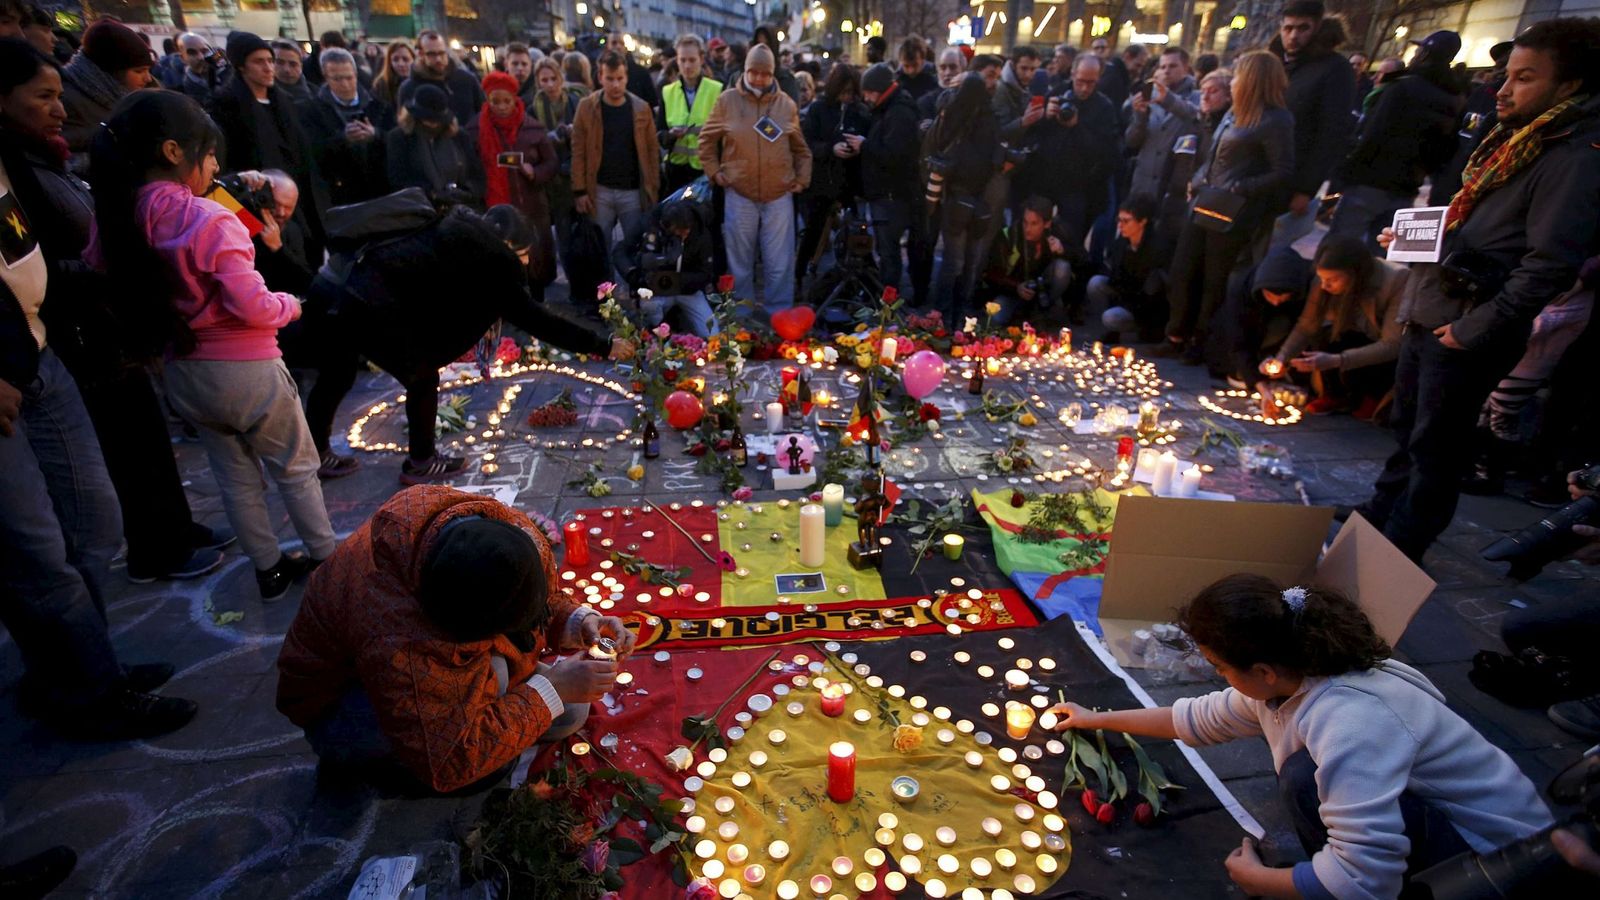 Foto: Belgas durante un homenaje improvisado a las víctimas de los atentados de Bruselas, en la capital belga, el 22 de marzo de 2016 (Reuters).